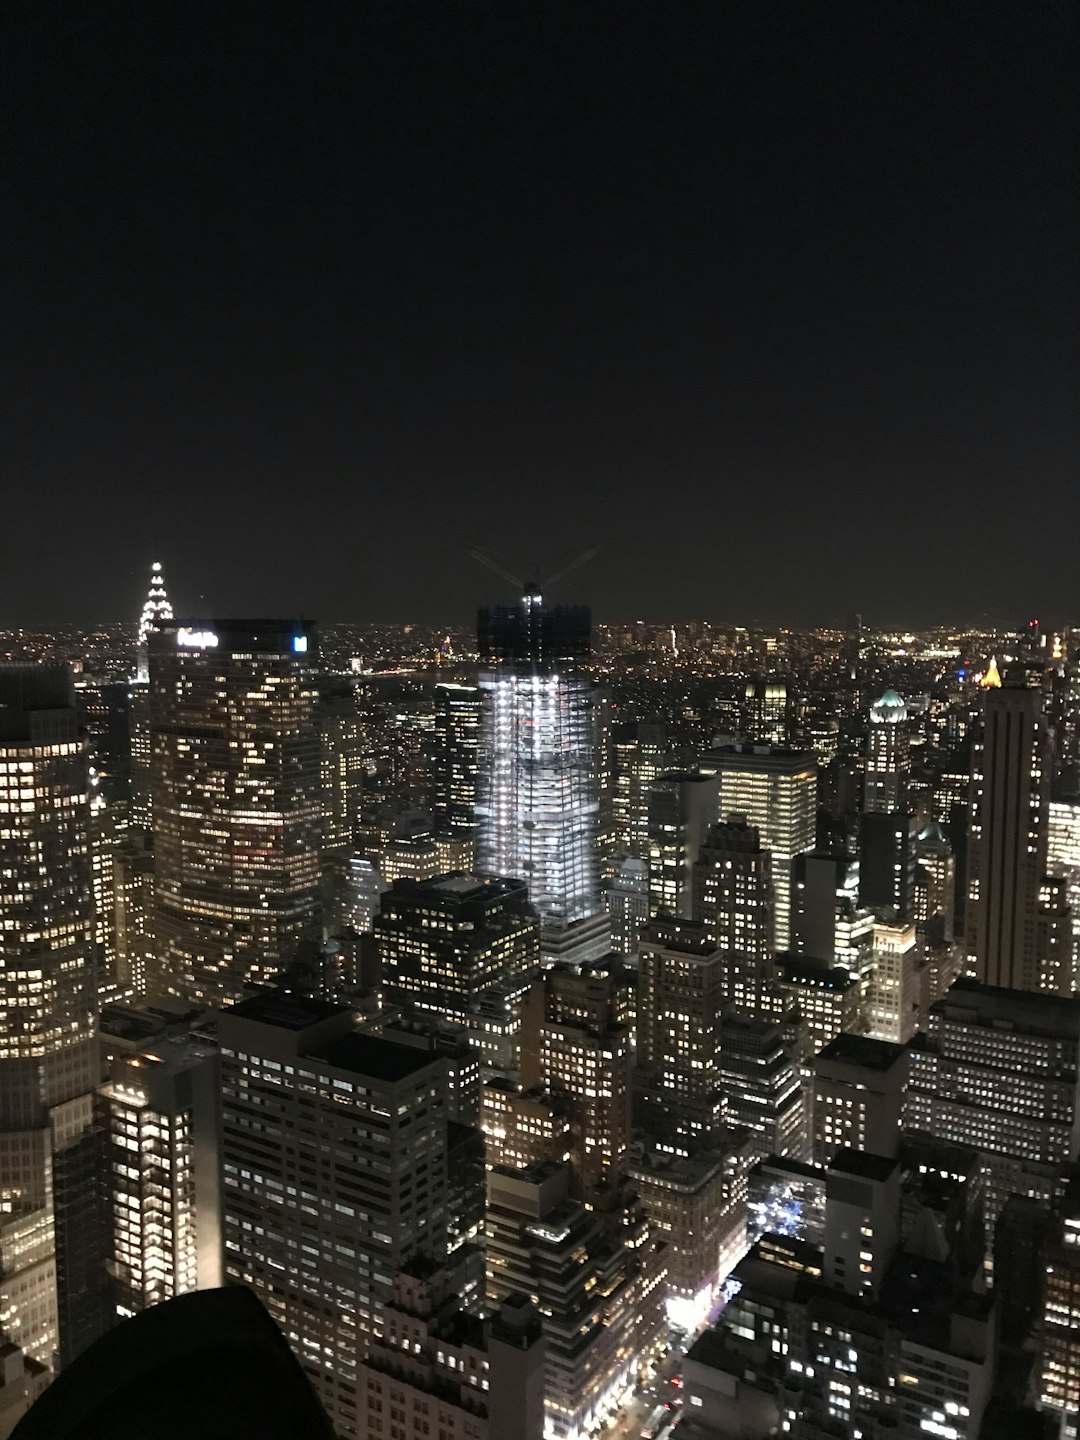 Landmark photo spot Rockefeller Center Chrysler Building